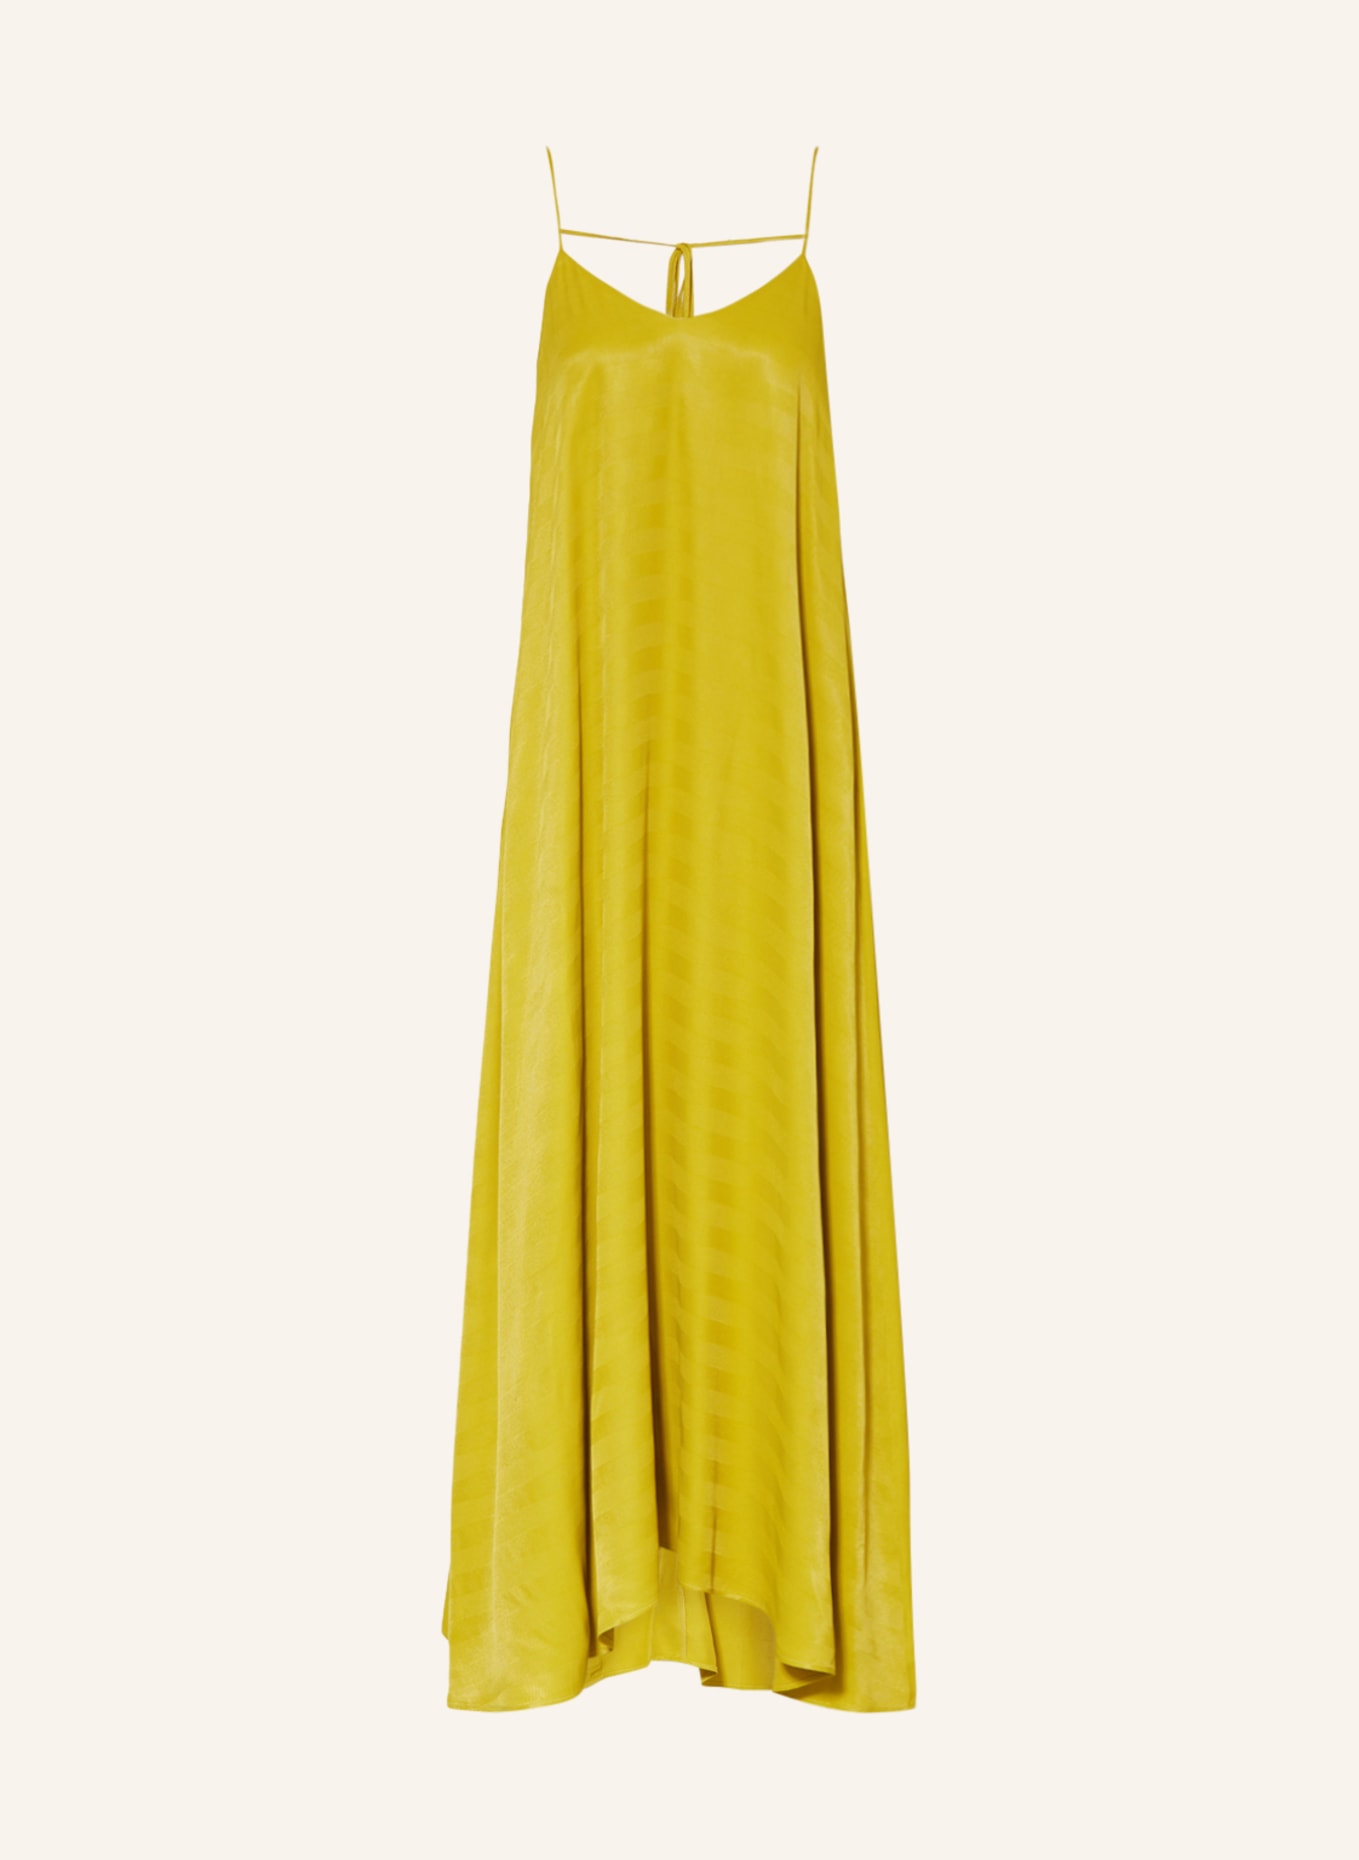 KARO KAUER Kleid, Farbe: OLIV (Bild 1)